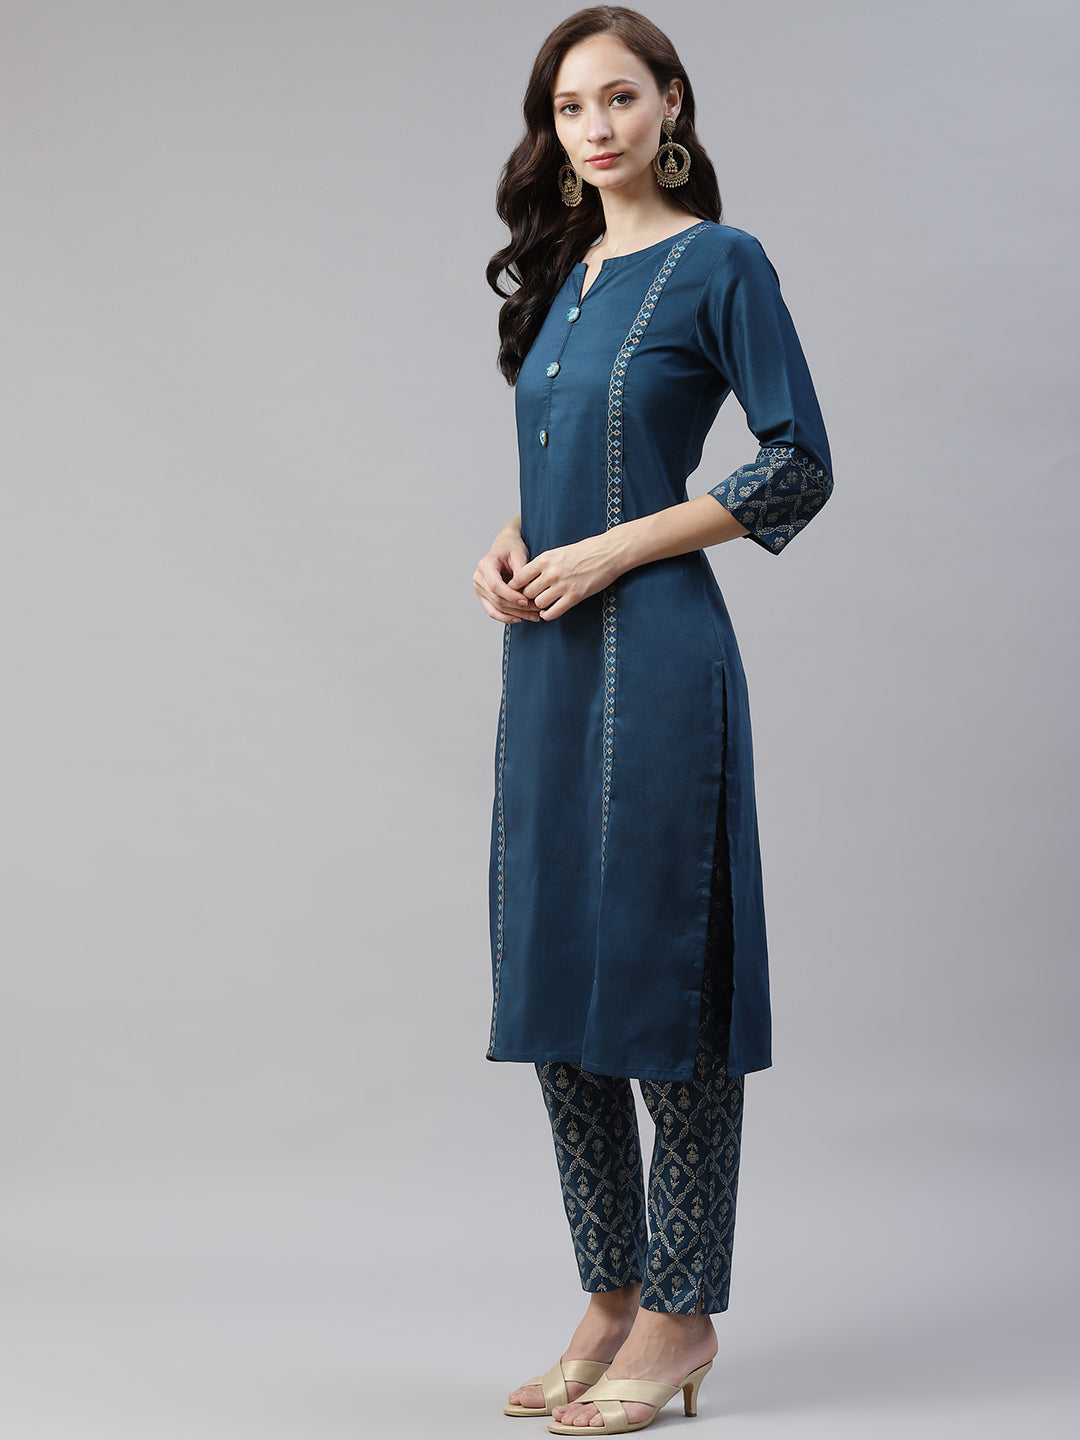 Women Turquoise Blue Kurta With Pant And Dupatta by Ziyaa (3pcs Set)